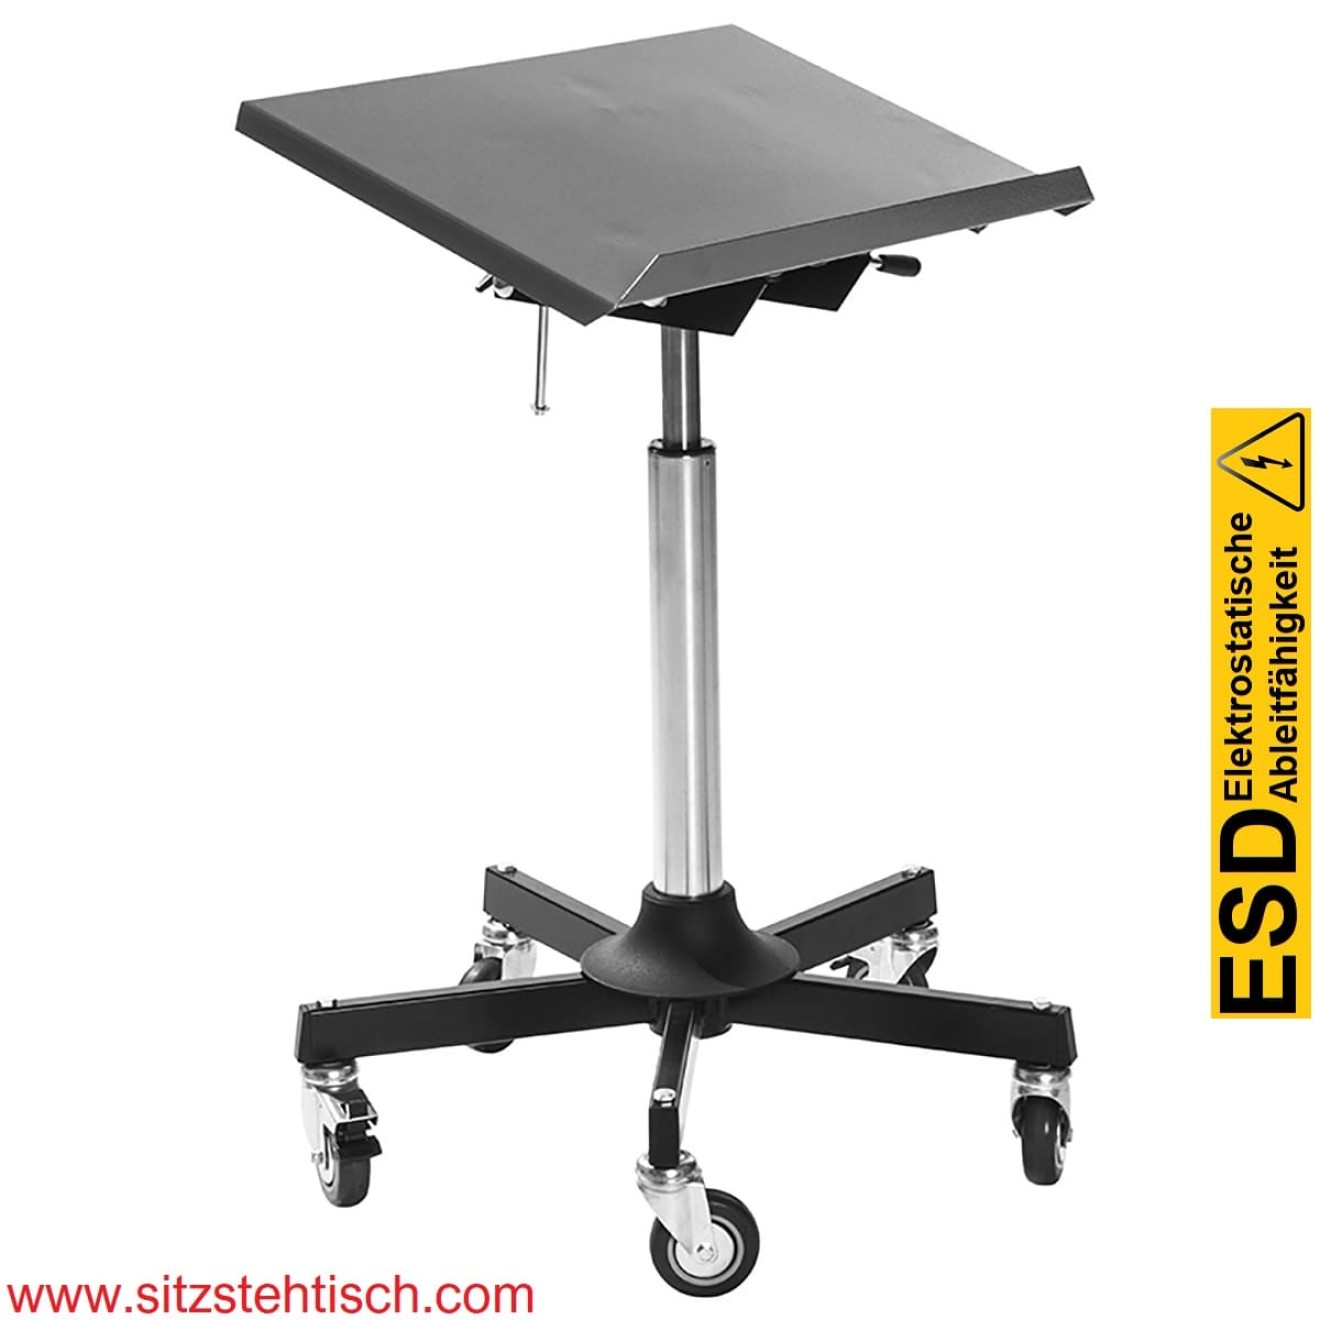 ESD Arbeitstisch - Montagetisch - Mini - Tischplatte 500 x 350 mm - Neigungswinkel Tischplatte 0° - 40° Grad verstellbar - Höhenverstellung von 680 - 940 mm - 5 elektrisch leitfähige Lenkrollen Ø 75 mm mit Bremsen - 5 Jahre Garantie